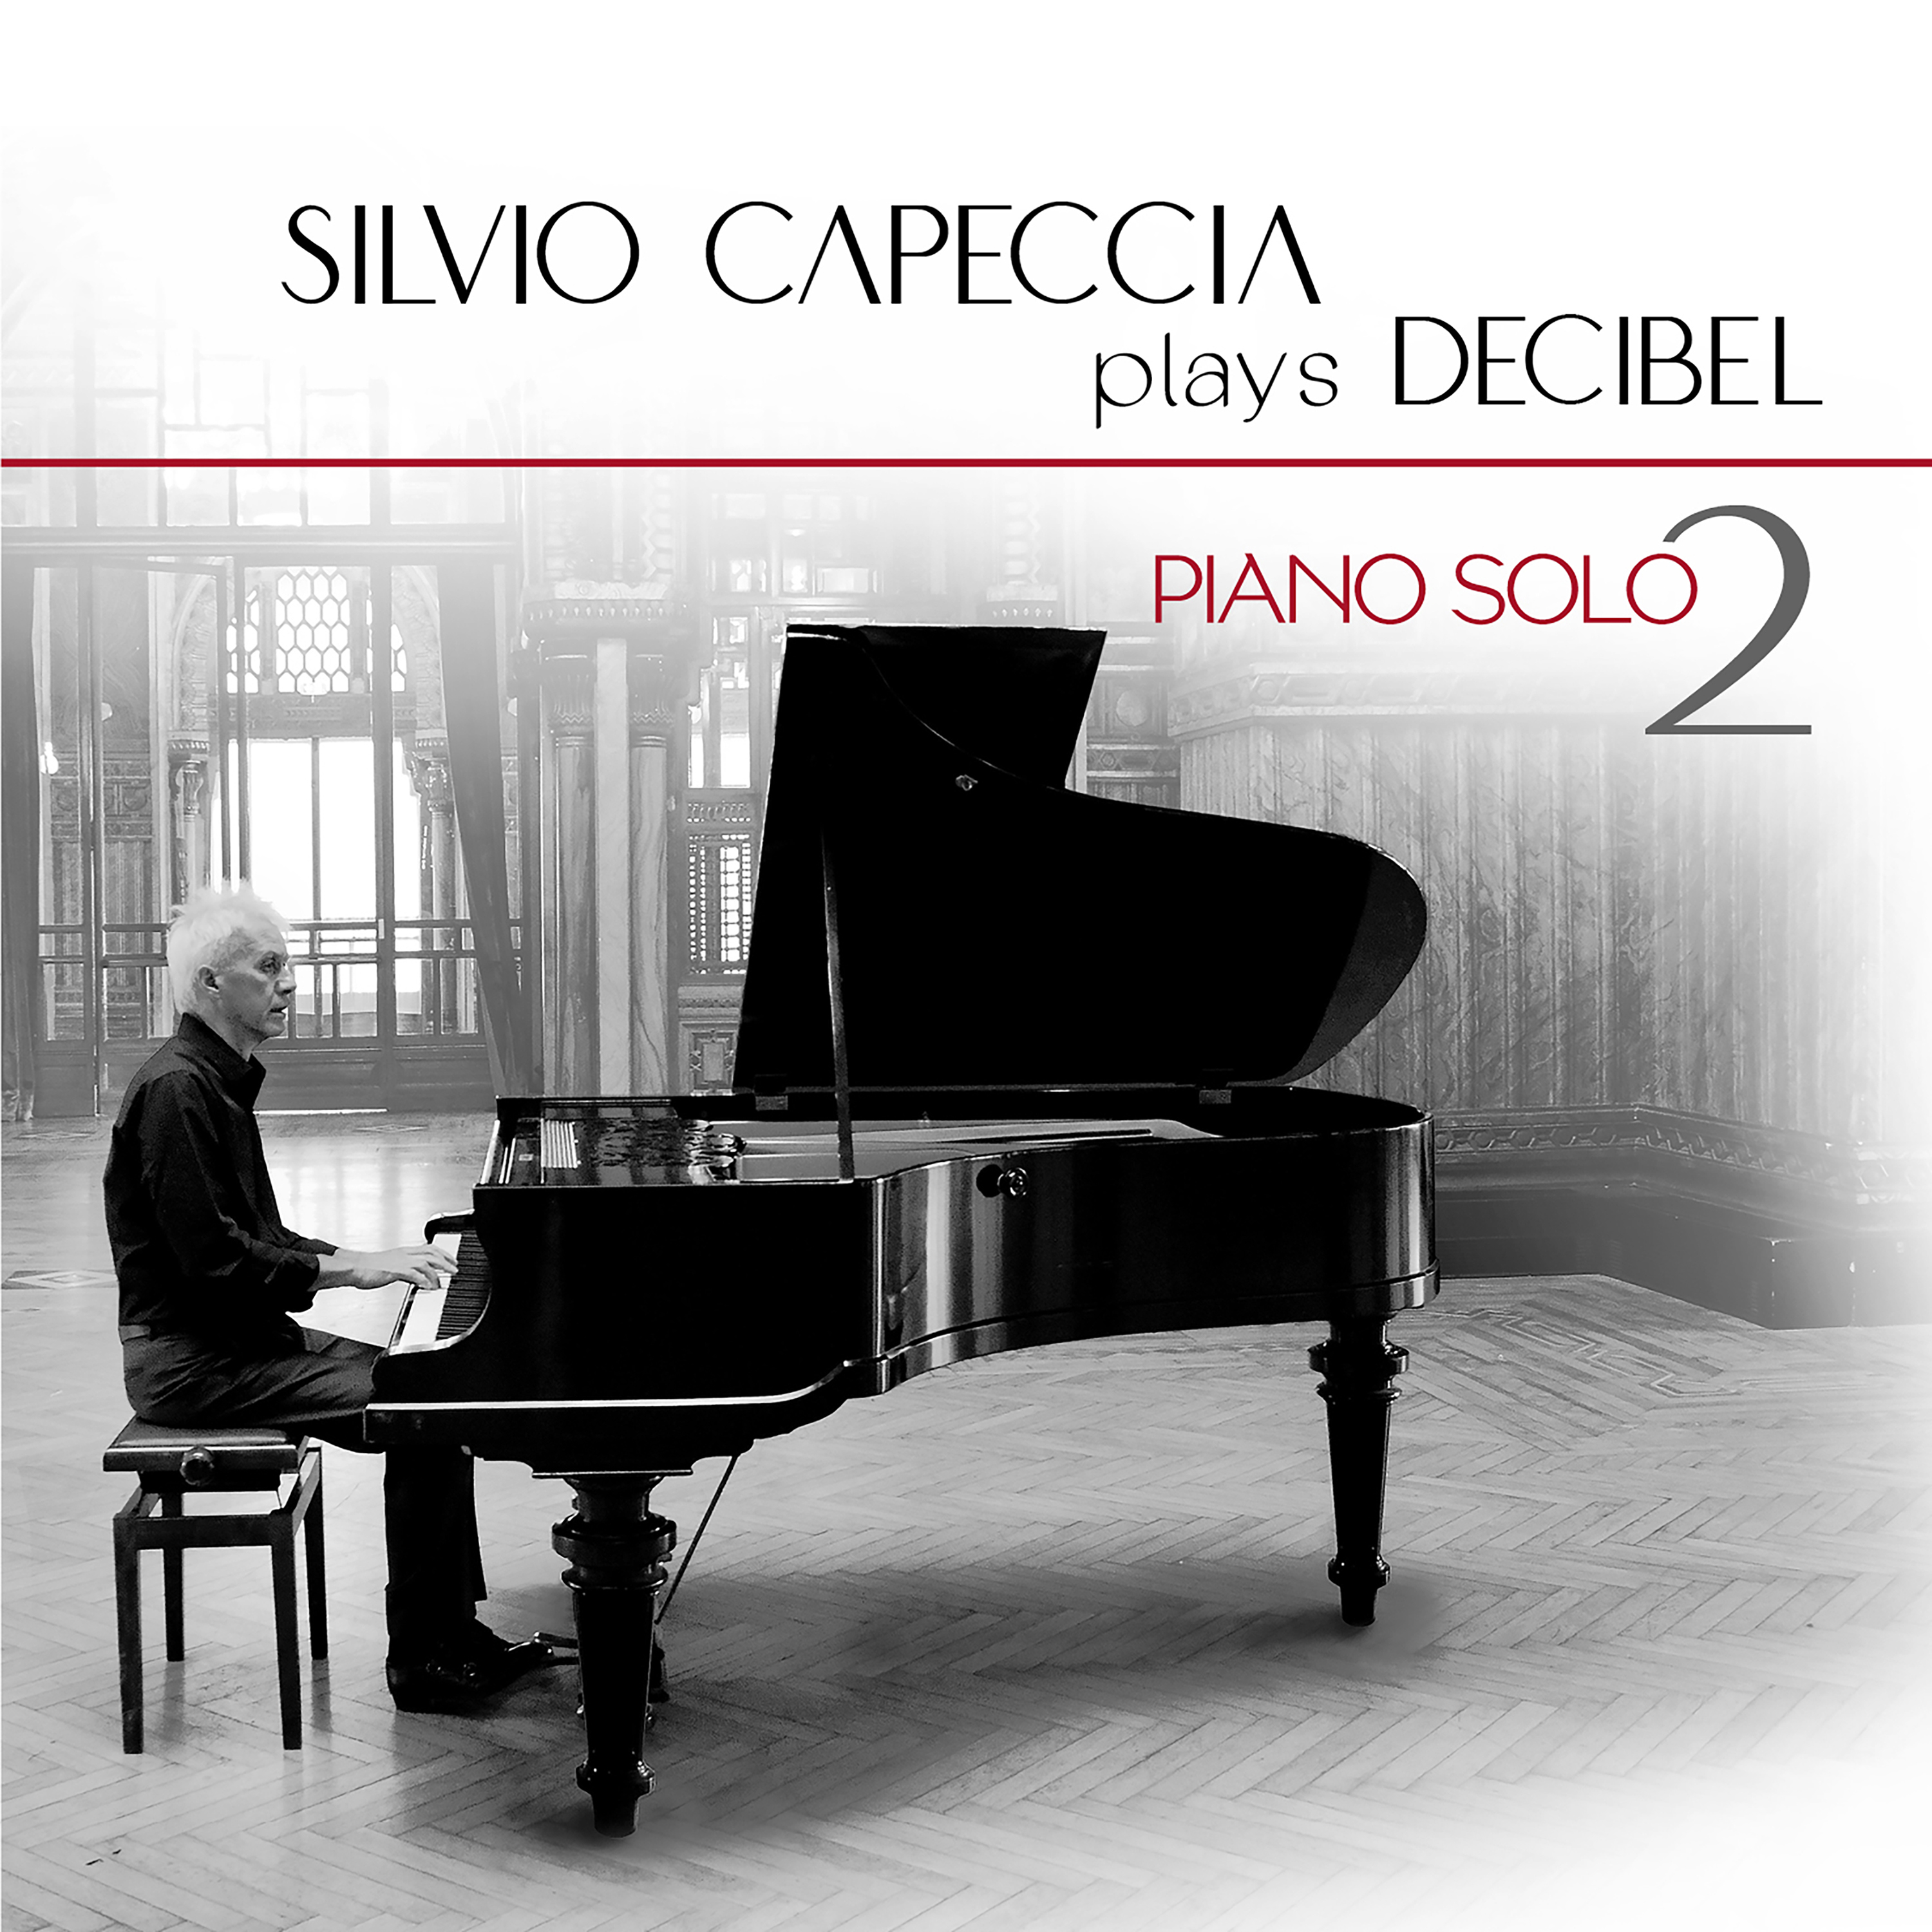 SILVIO CAPECCIA plays DECIBEL: “Piano Solo2” è il secondo volume del progetto del tastierista, gia’ membro fondatore dei decibel con Enrico Ruggeri